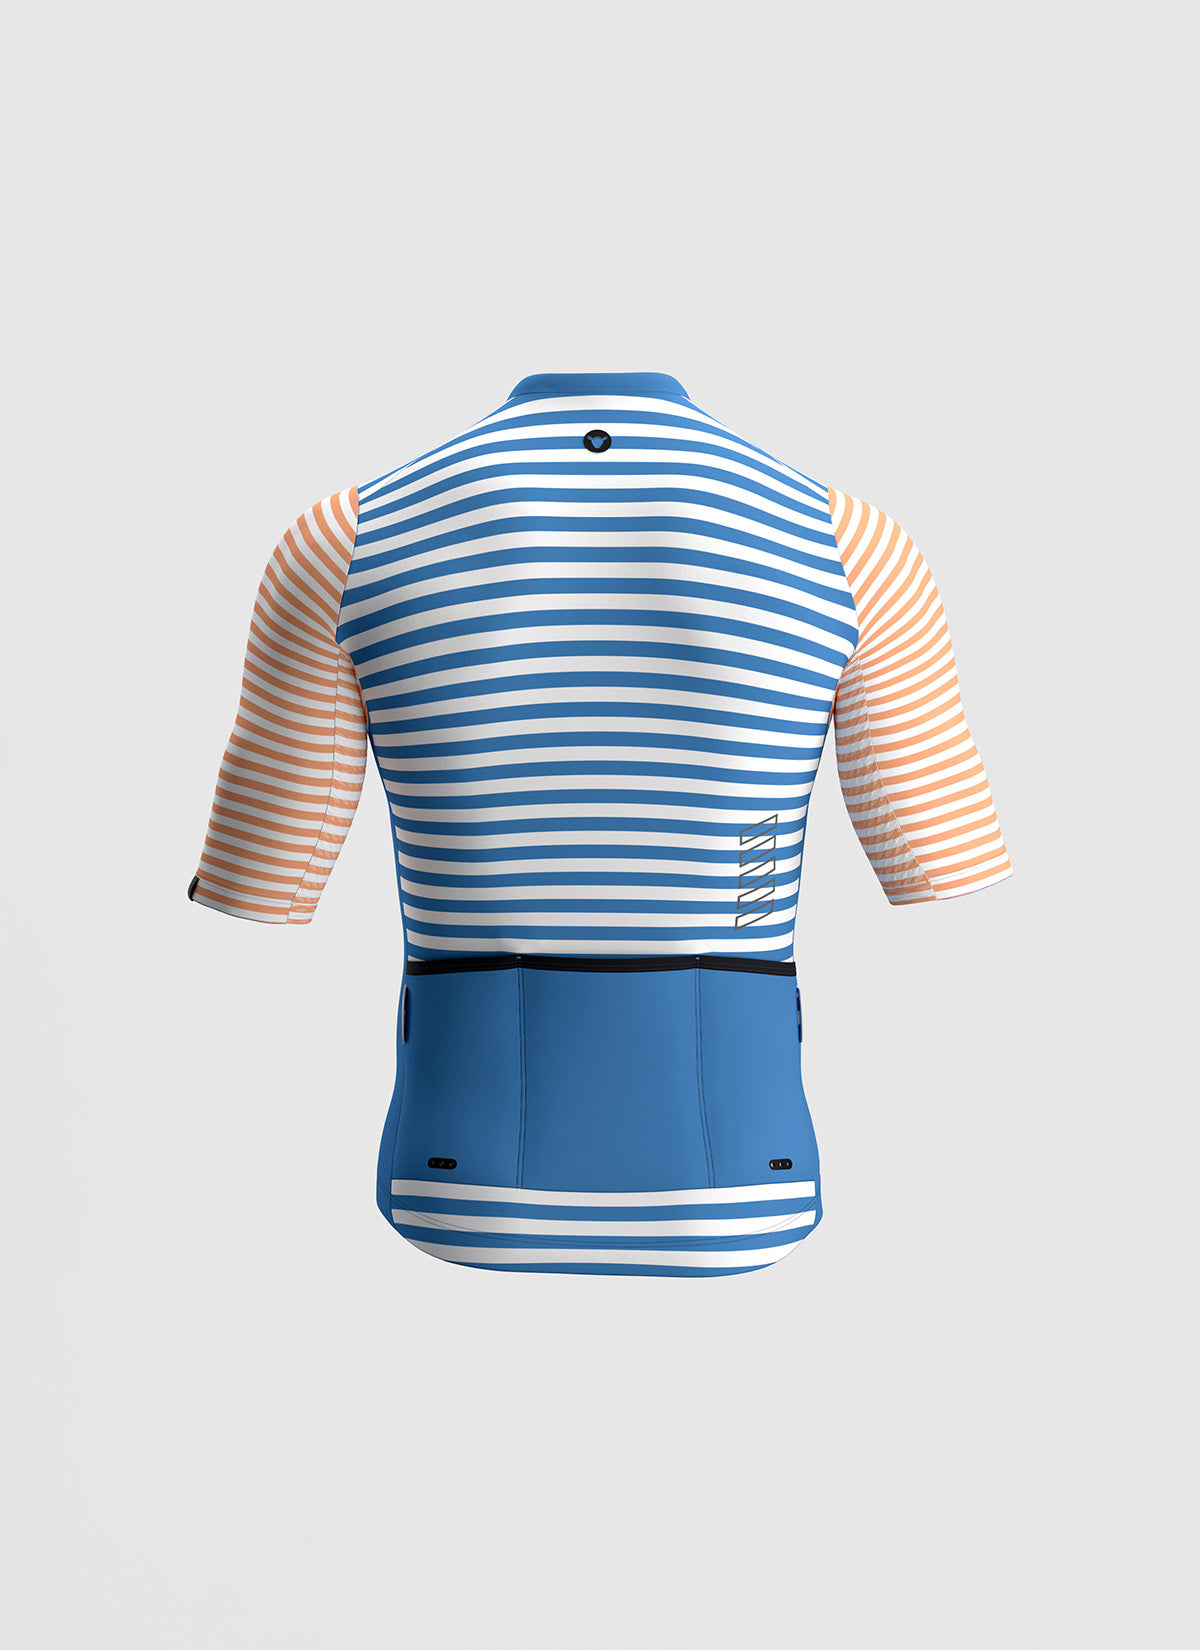 Men's Essentials TEAM Jersey - Azure Stripe